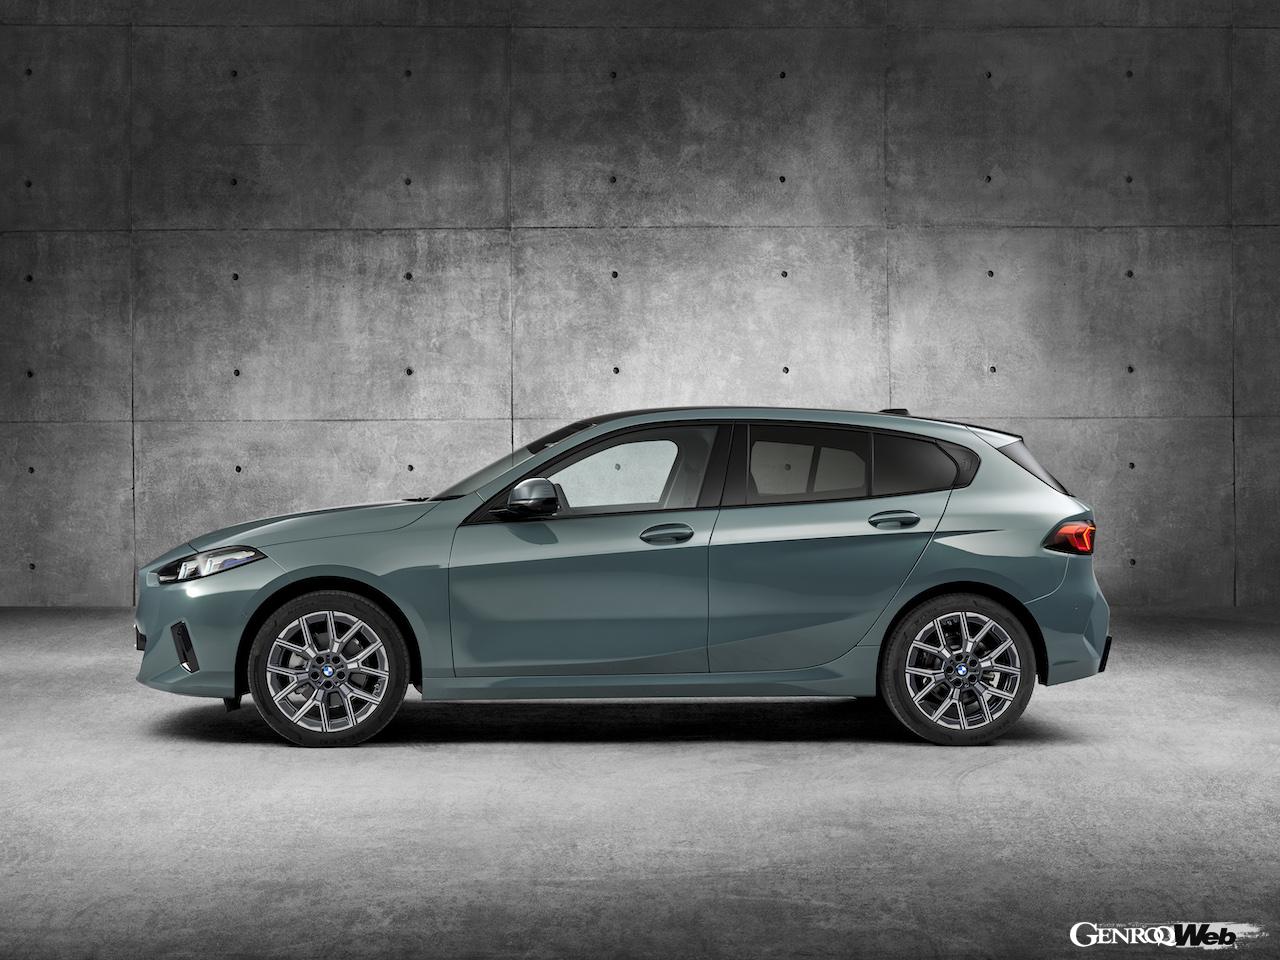 「新型「BMW 1シリーズ」がデビュー「待望の48Vマイルドハイブリッド導入するなど幅広いパワートレイン展開」」の11枚めの画像